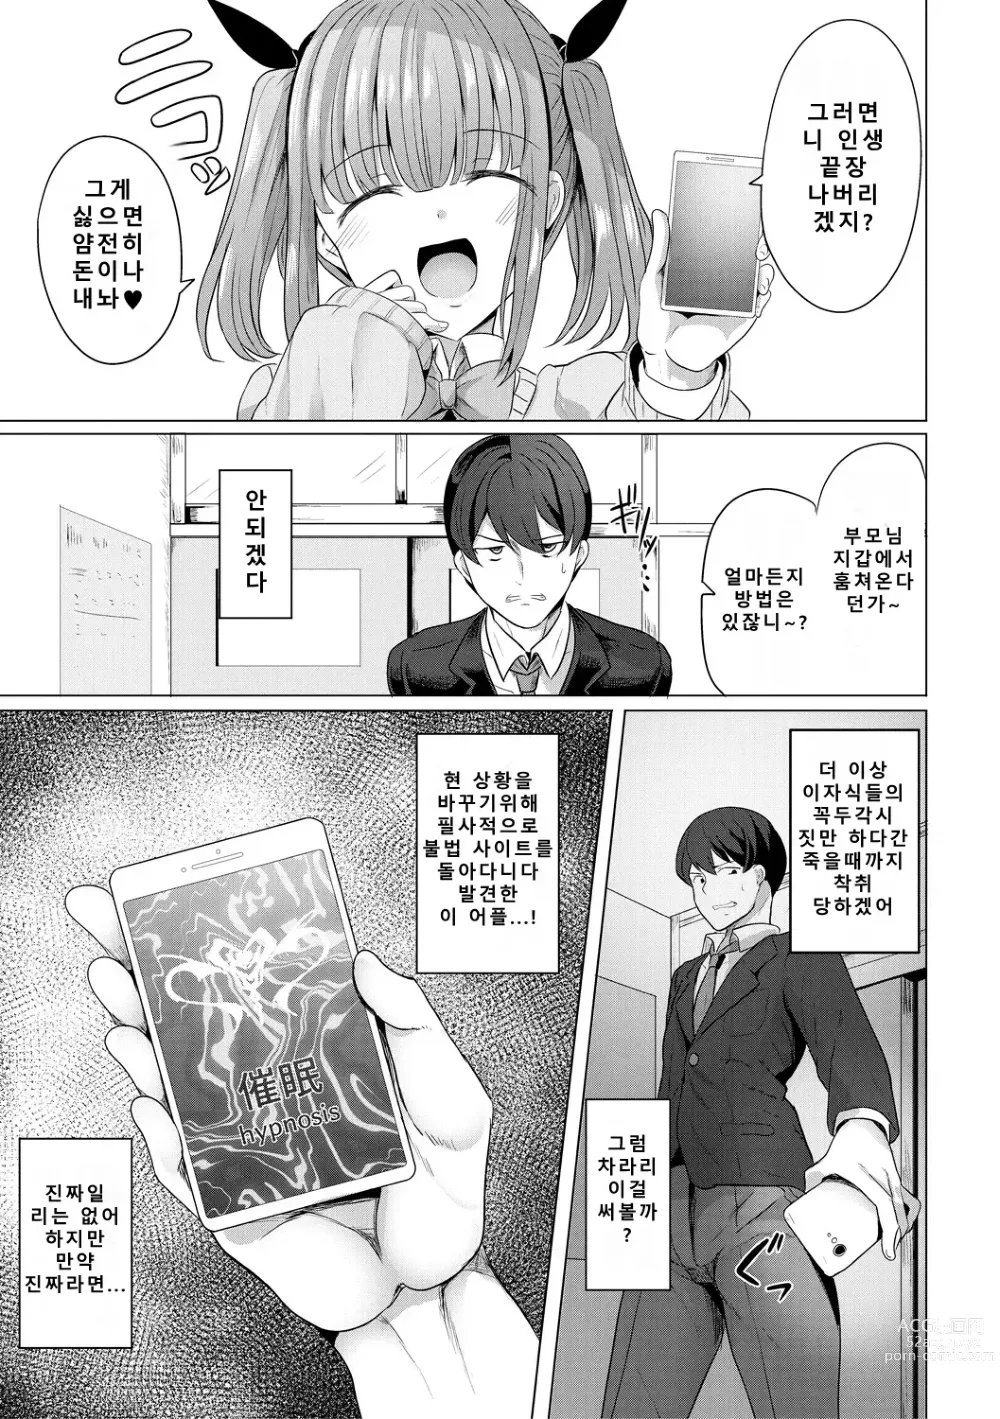 Page 7 of manga 최면복수 1화